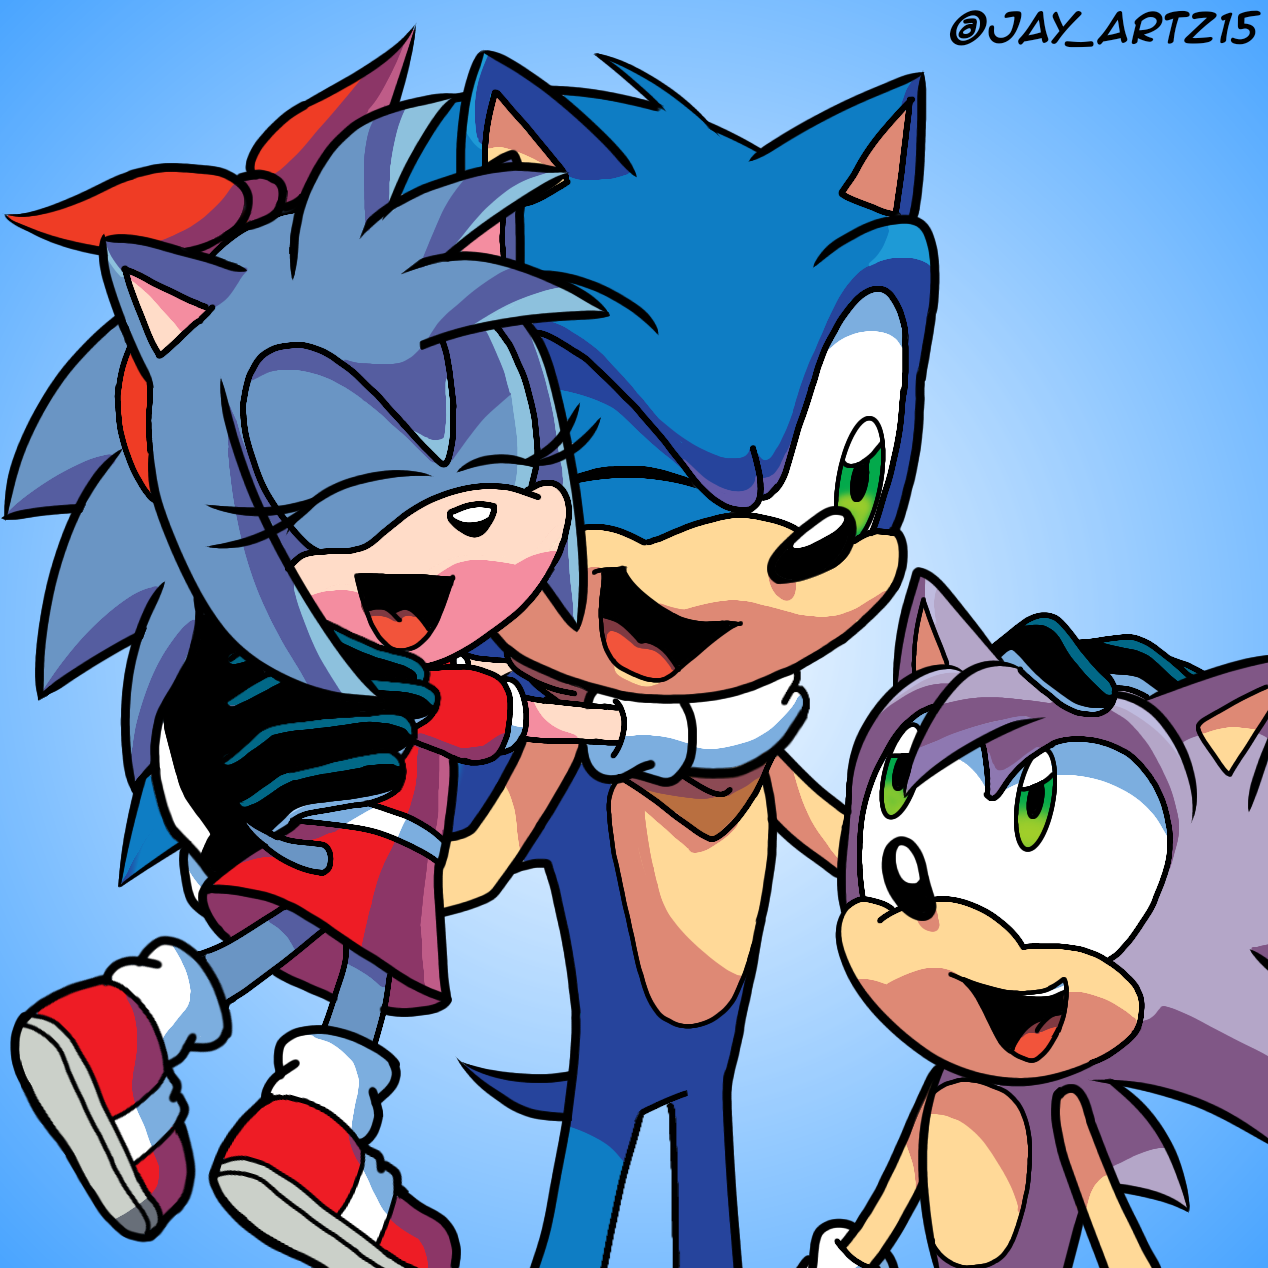 Sonic Origins (Movie Style) by Jame5rheneaZ on DeviantArt